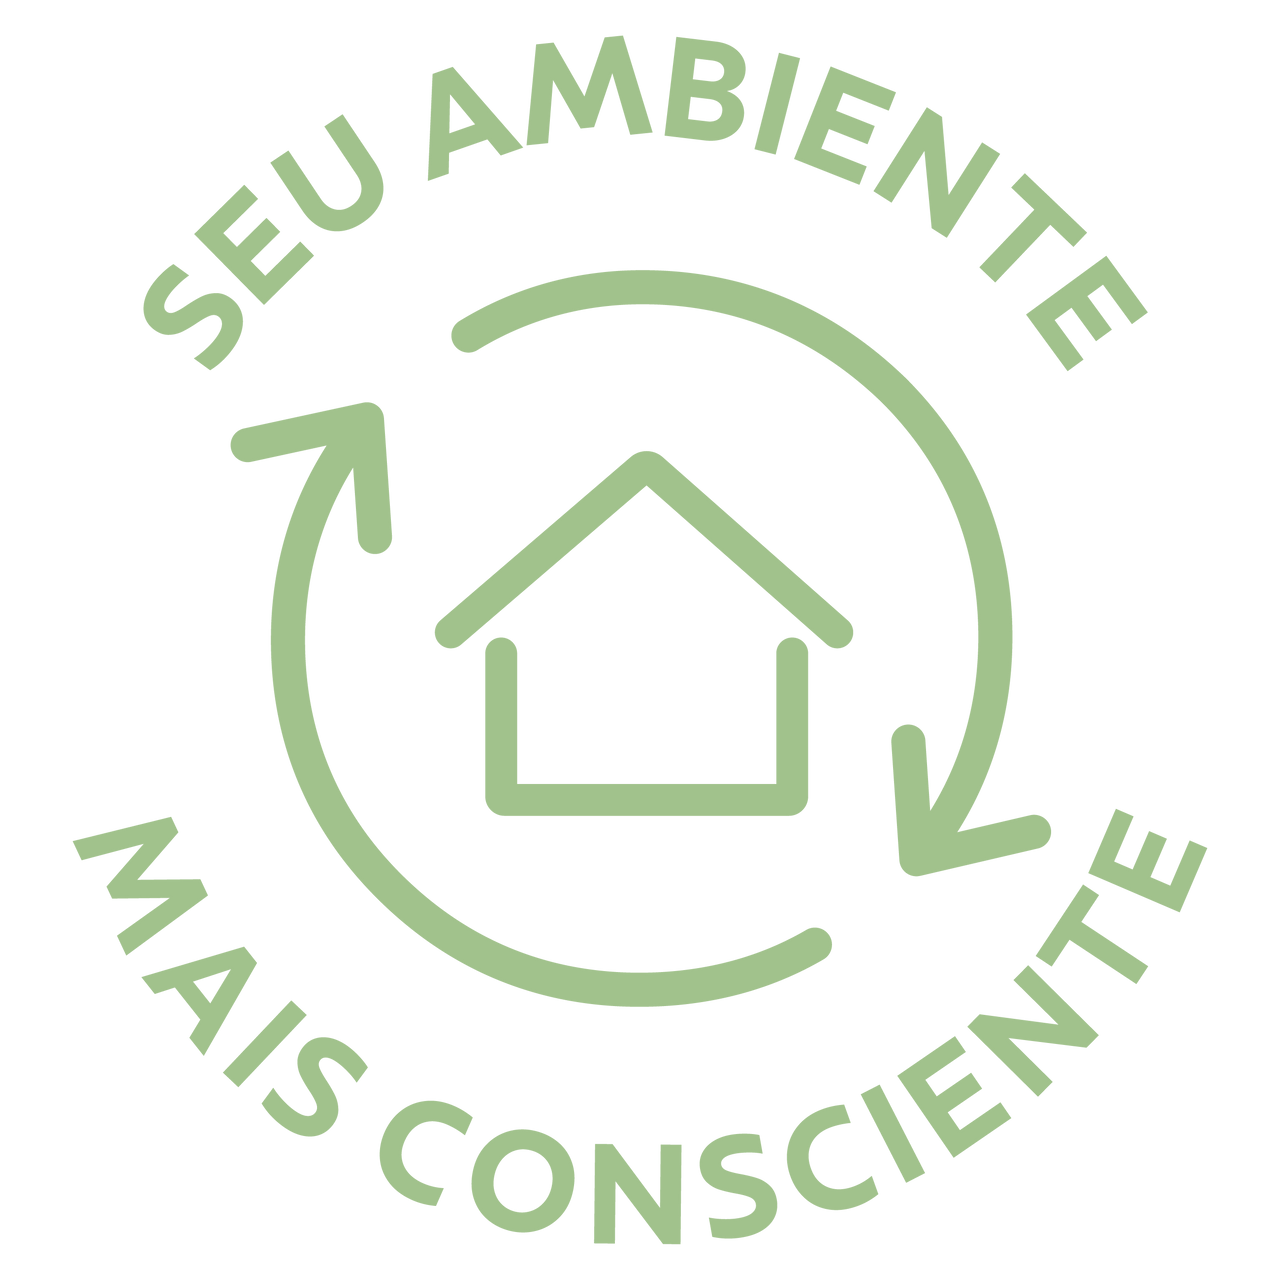 Logotipo “Seu ambiente mais consciente”. 